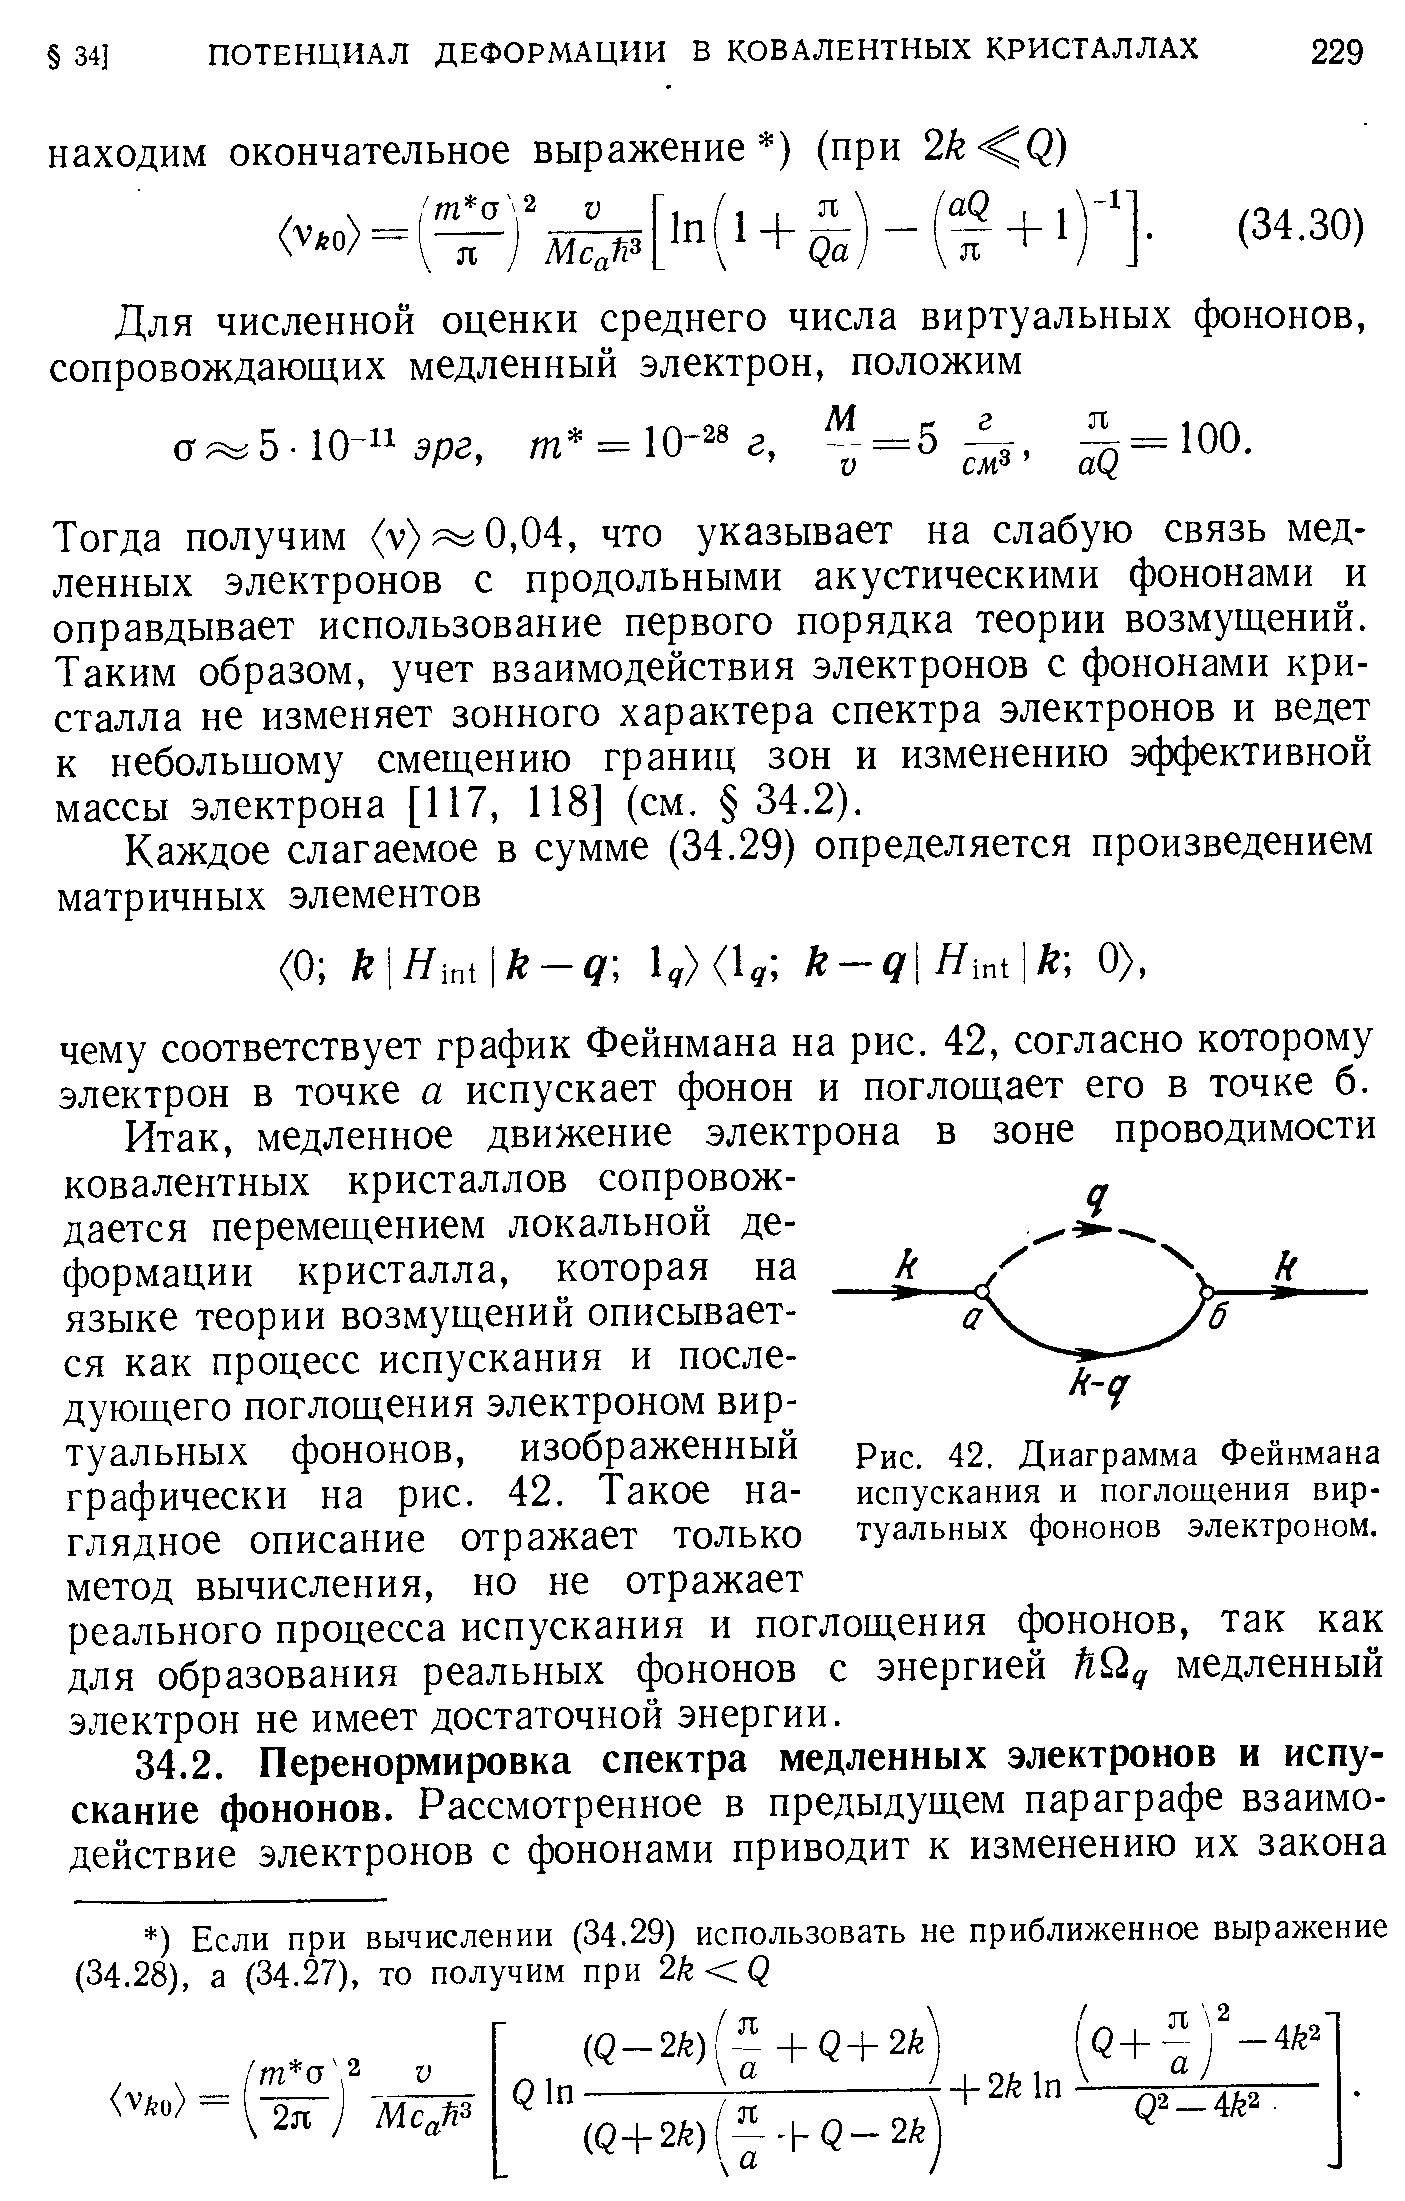 Рис. 42. <a href="/info/16258">Диаграмма Фейнмана</a> испускания и поглощения виртуальных фононов электроном.
